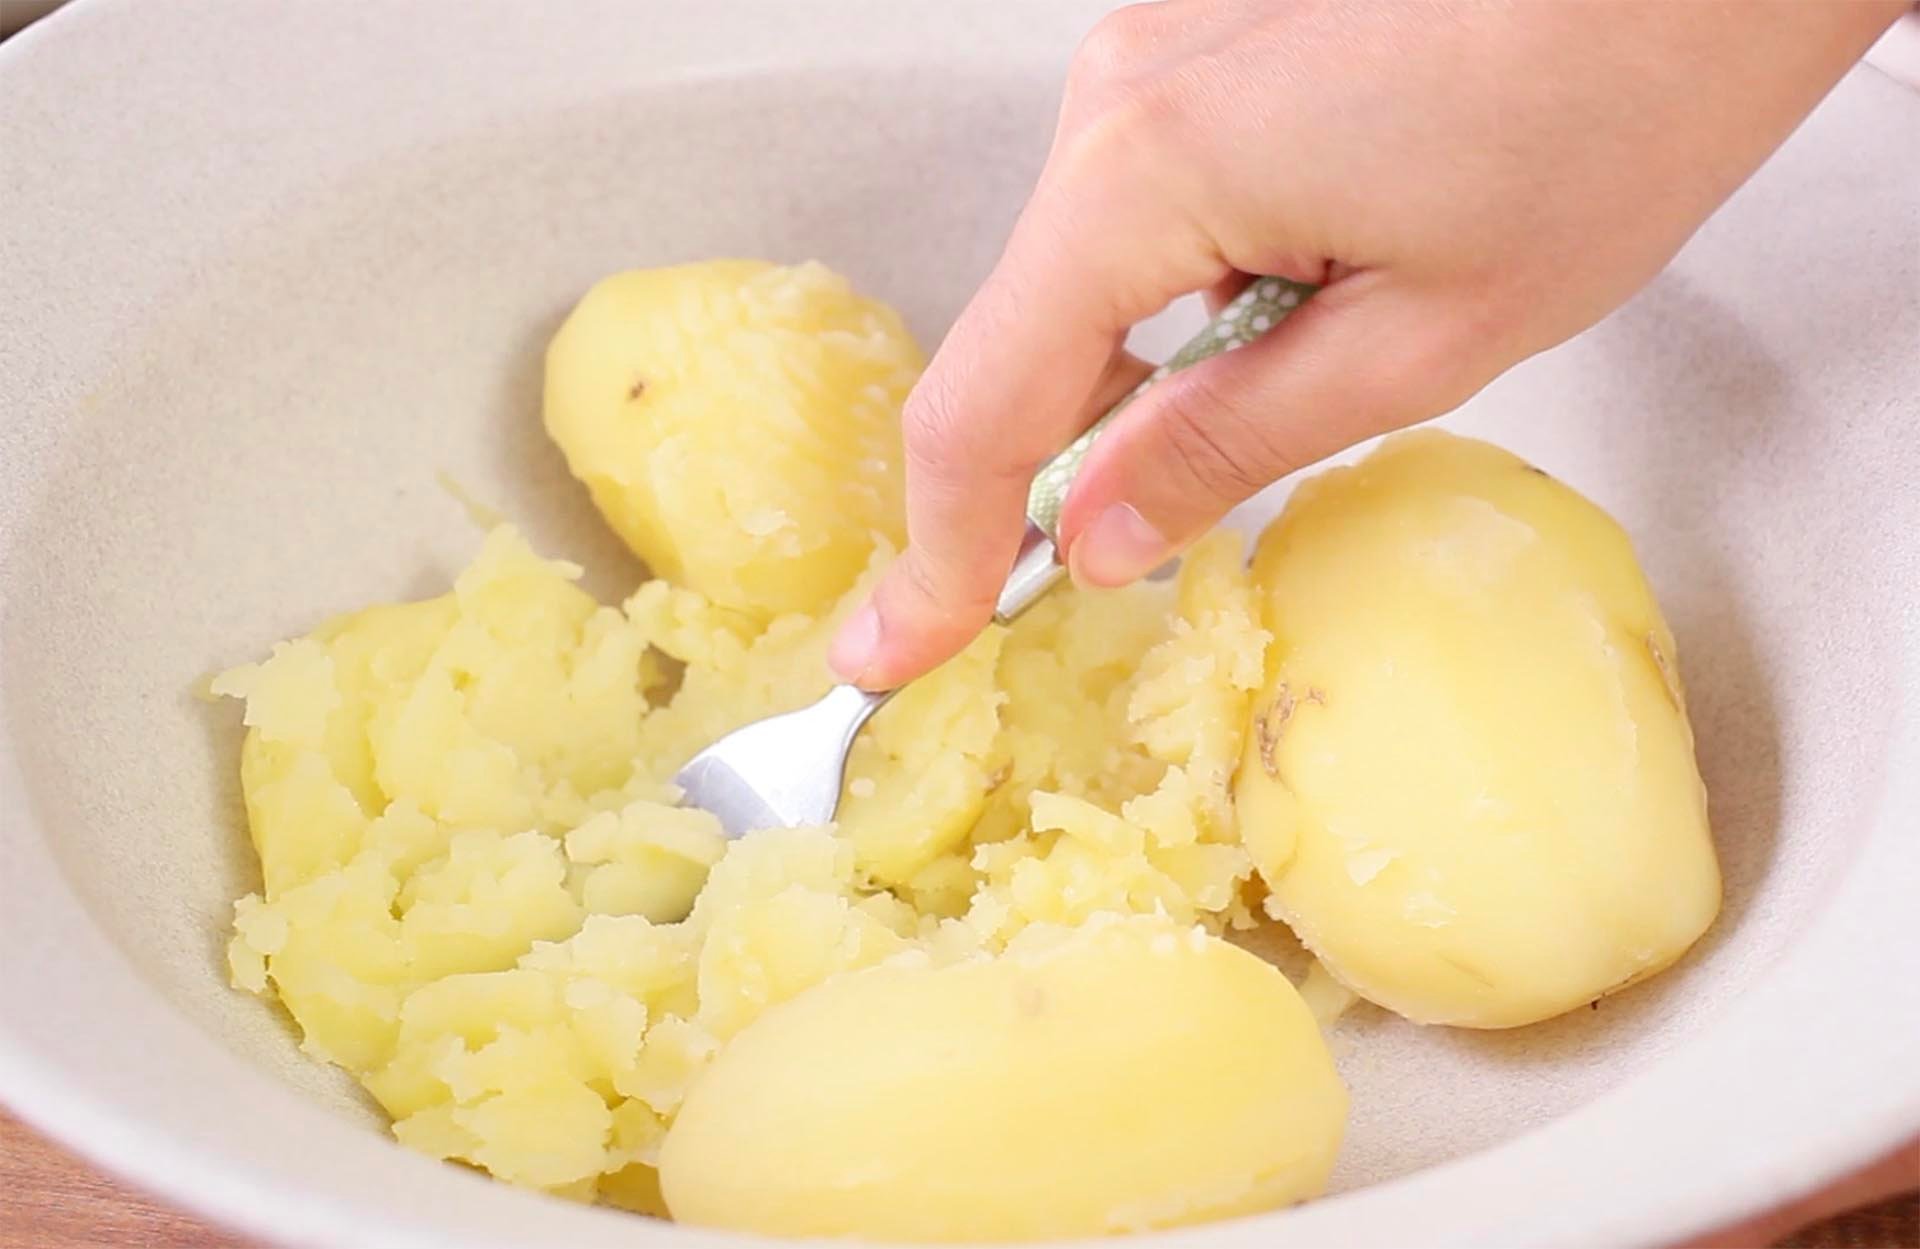 Cotolette di patate - Step 1